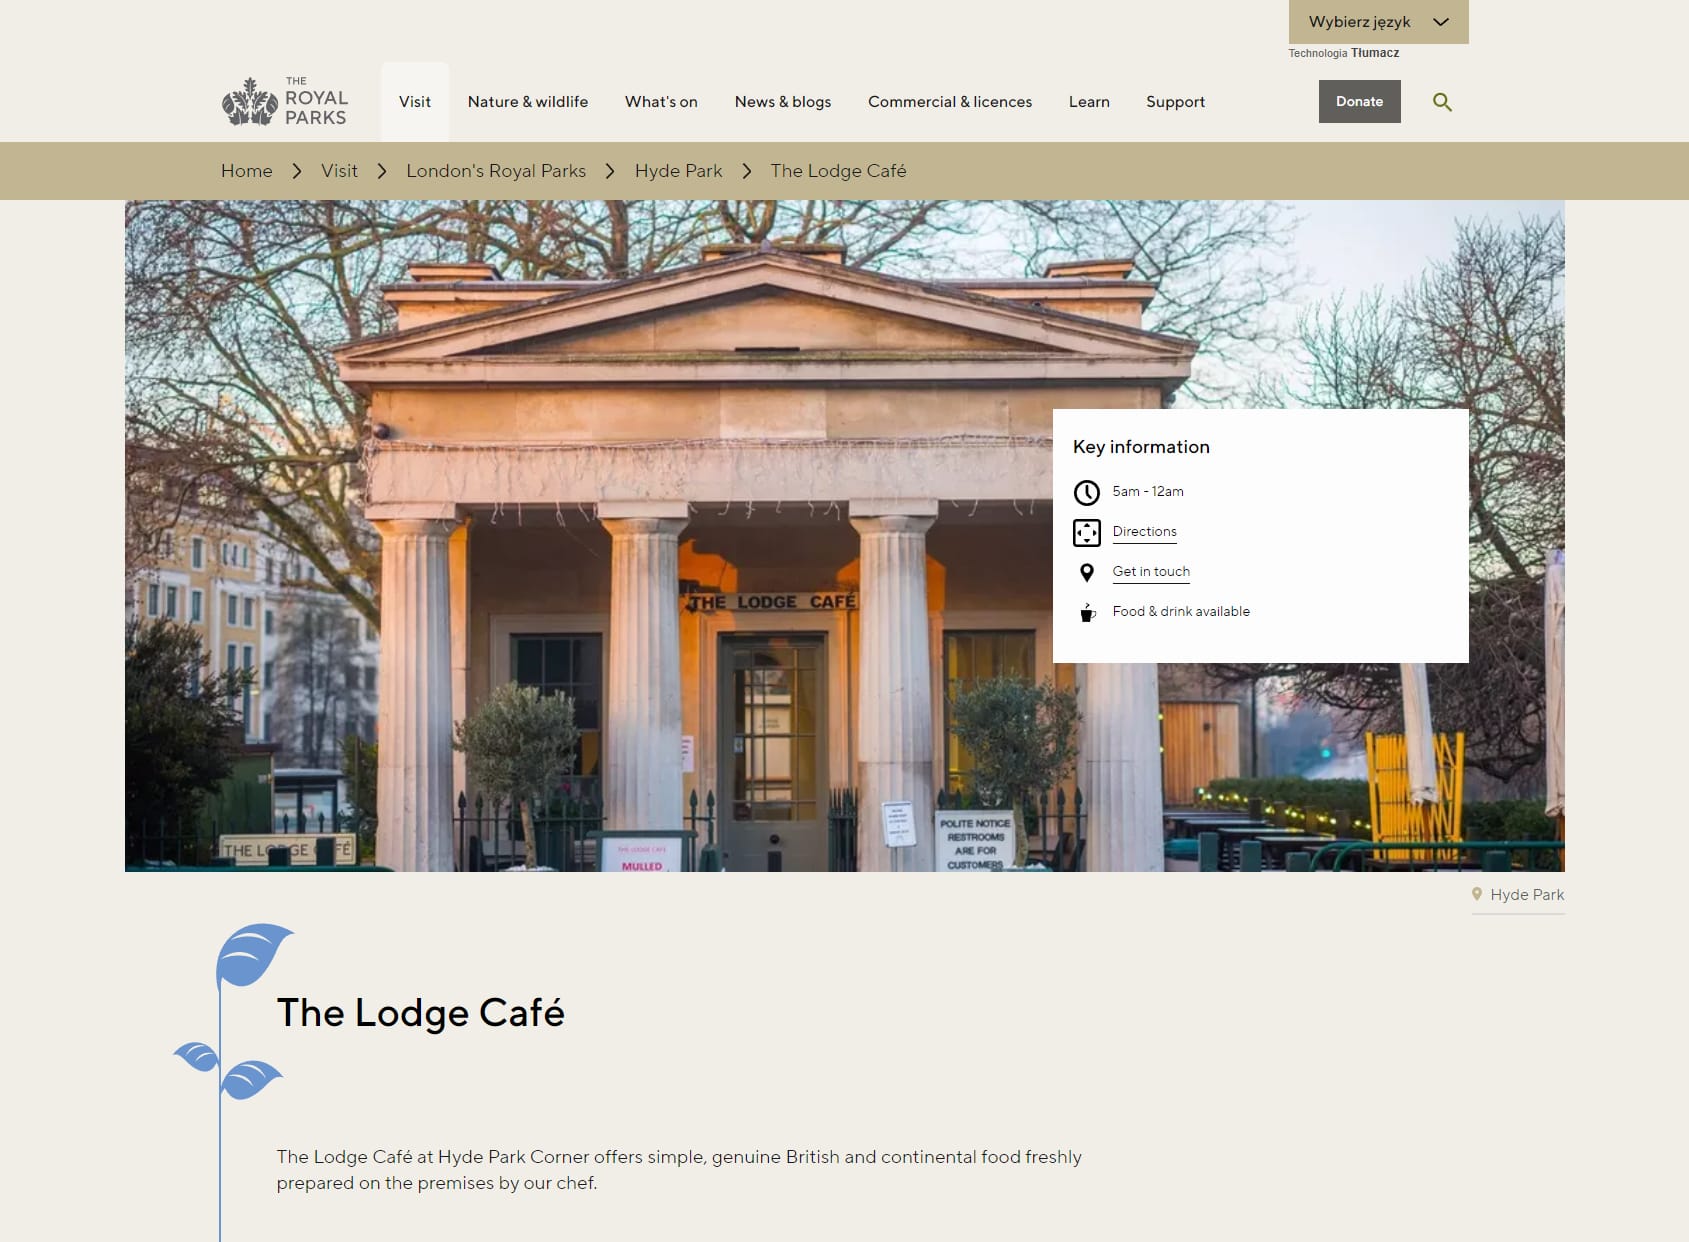 The Lodge Café